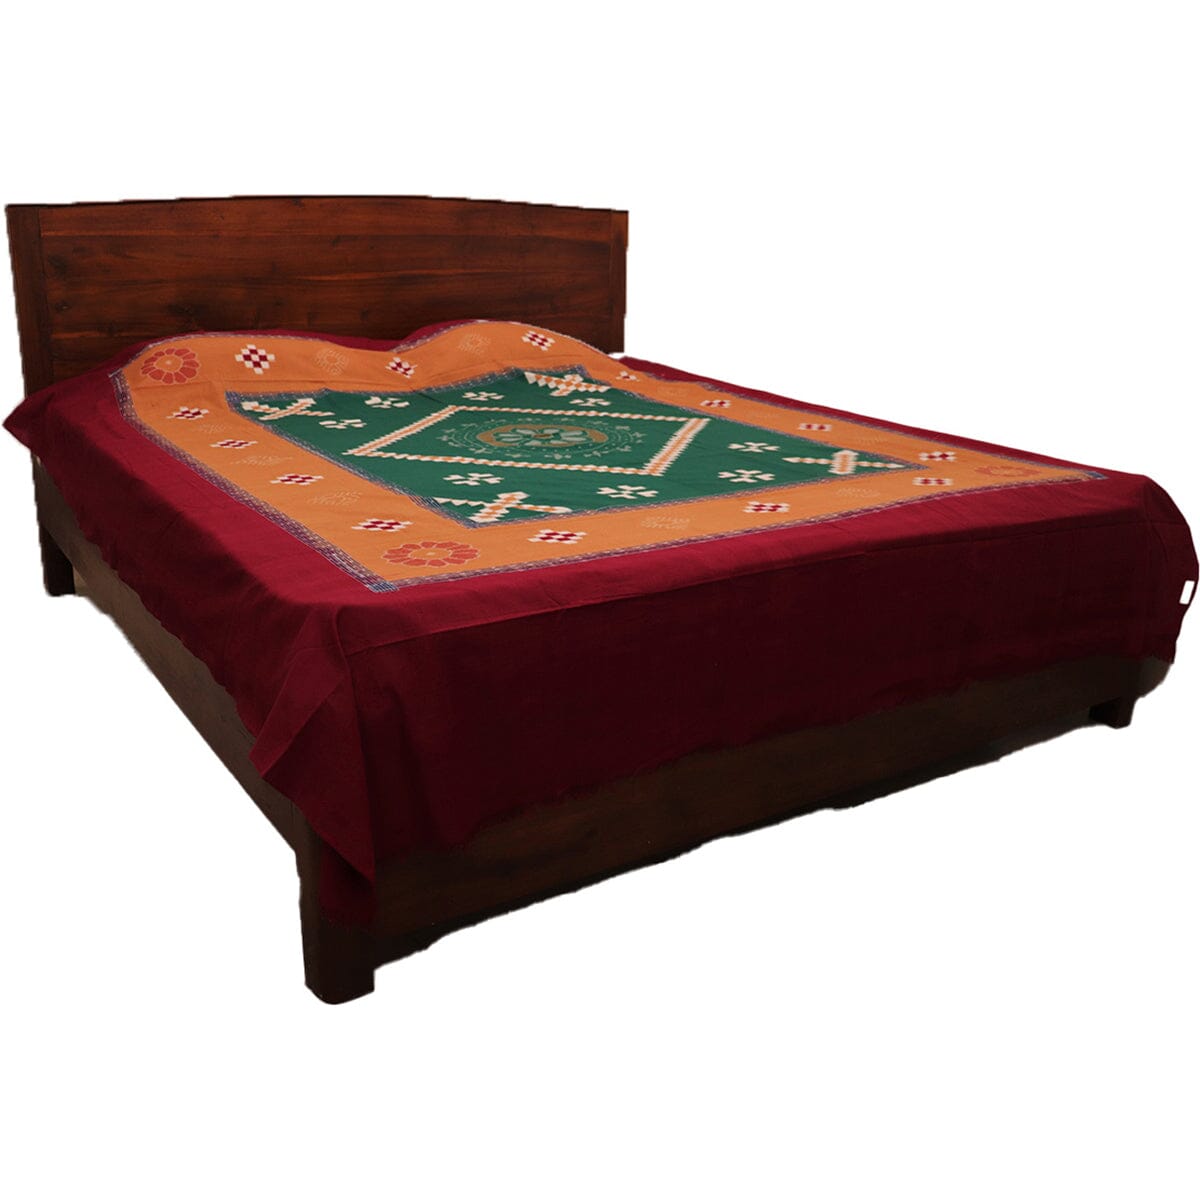 Handloom Ikat Bedsheet and Bedcover